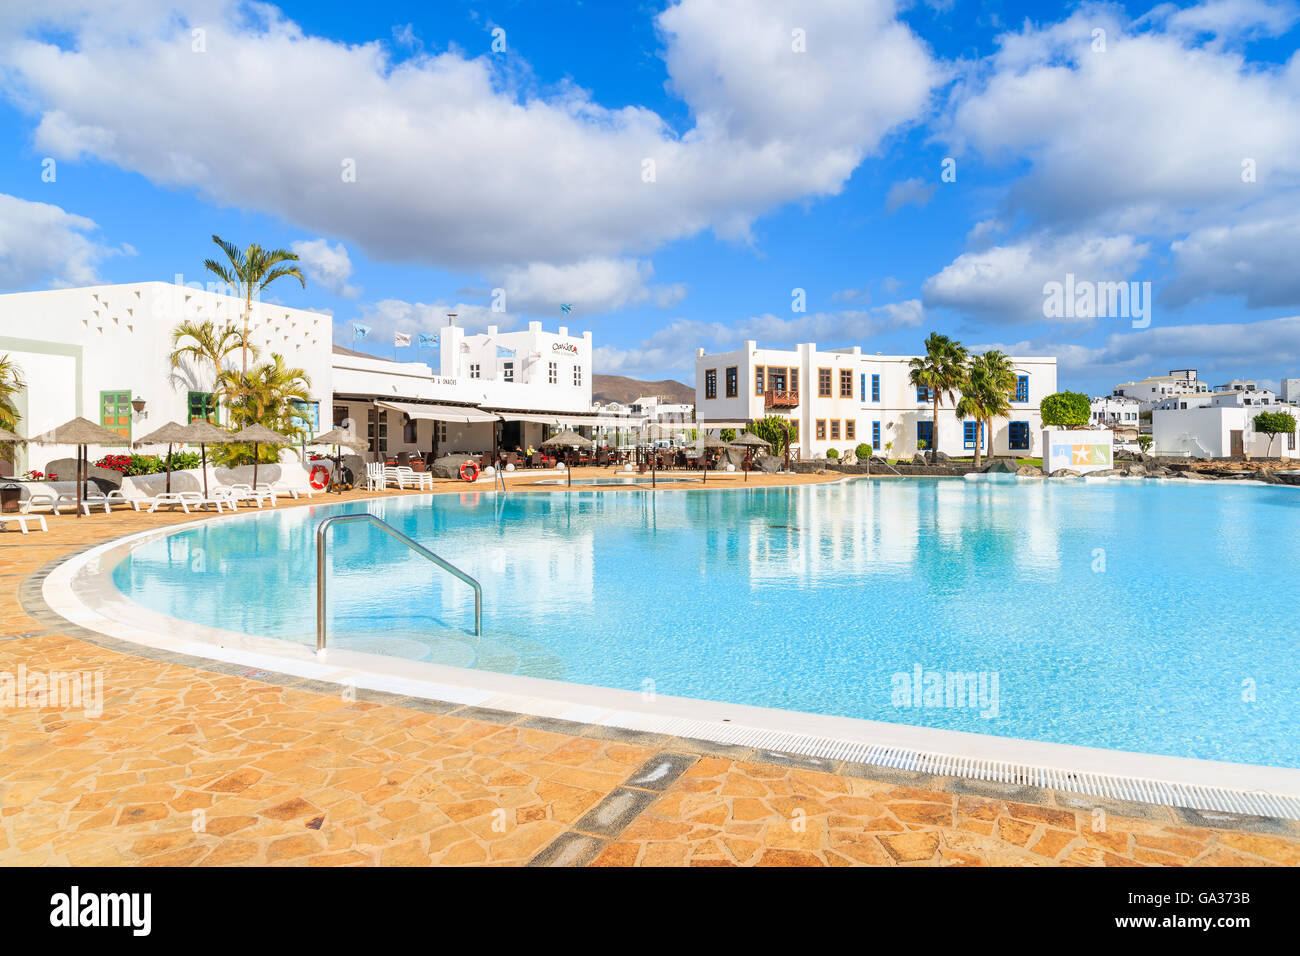 PLAYA BLANCA, LANZAROTE Insel - 17. Januar 2015: Swimmingpool Luxus Apartment-Komplex gebaut im traditionellen kanarischen Stil auf der Insel Lanzarote. Kanarischen Inseln sind ein beliebtes Urlaubsziel. Stockfoto